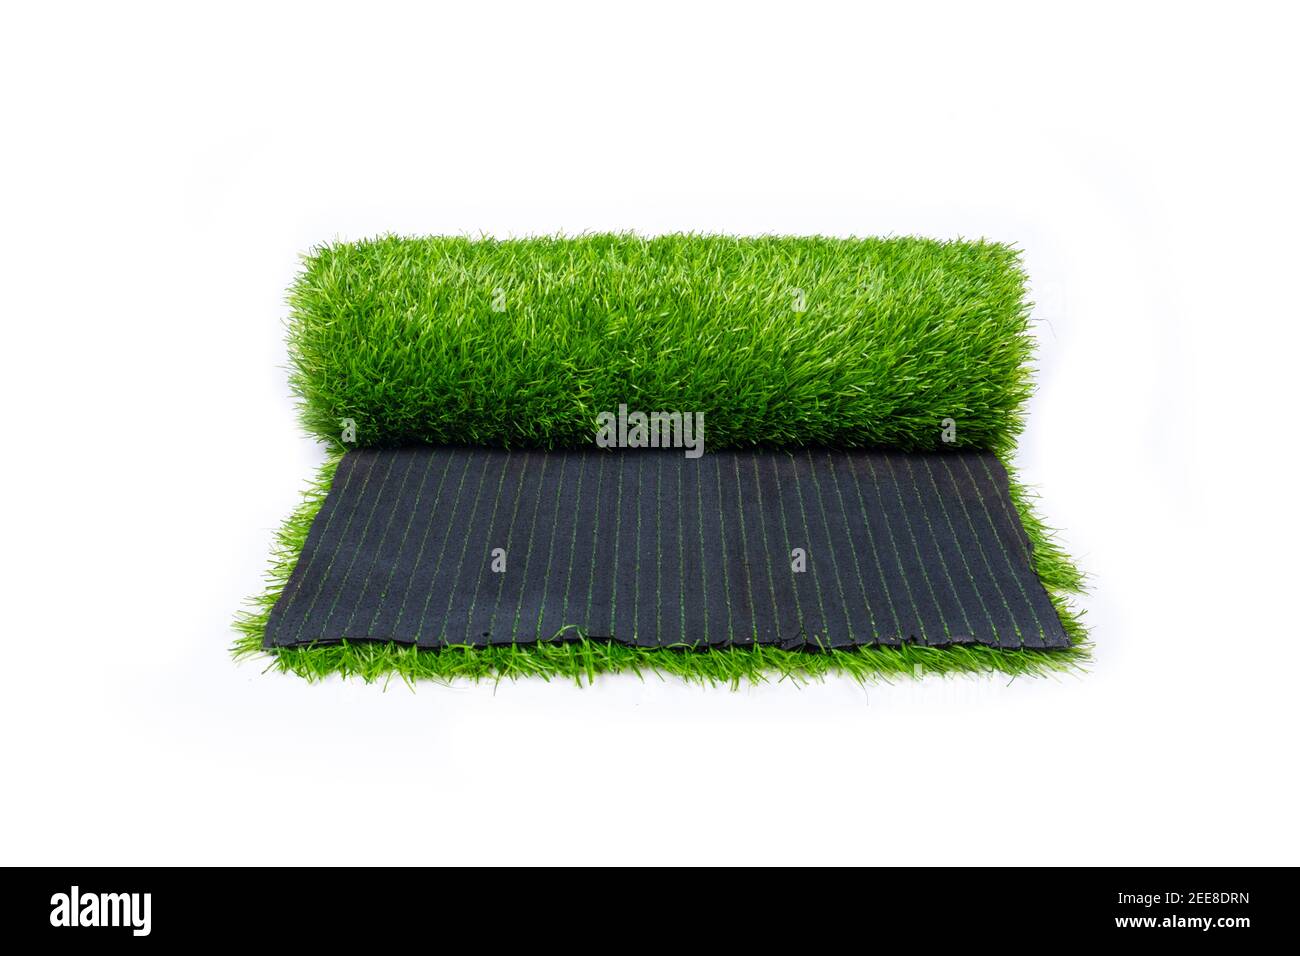 erba verde, rotolo di erba artificiale, rivestimento isolato su sfondo bianco Foto Stock